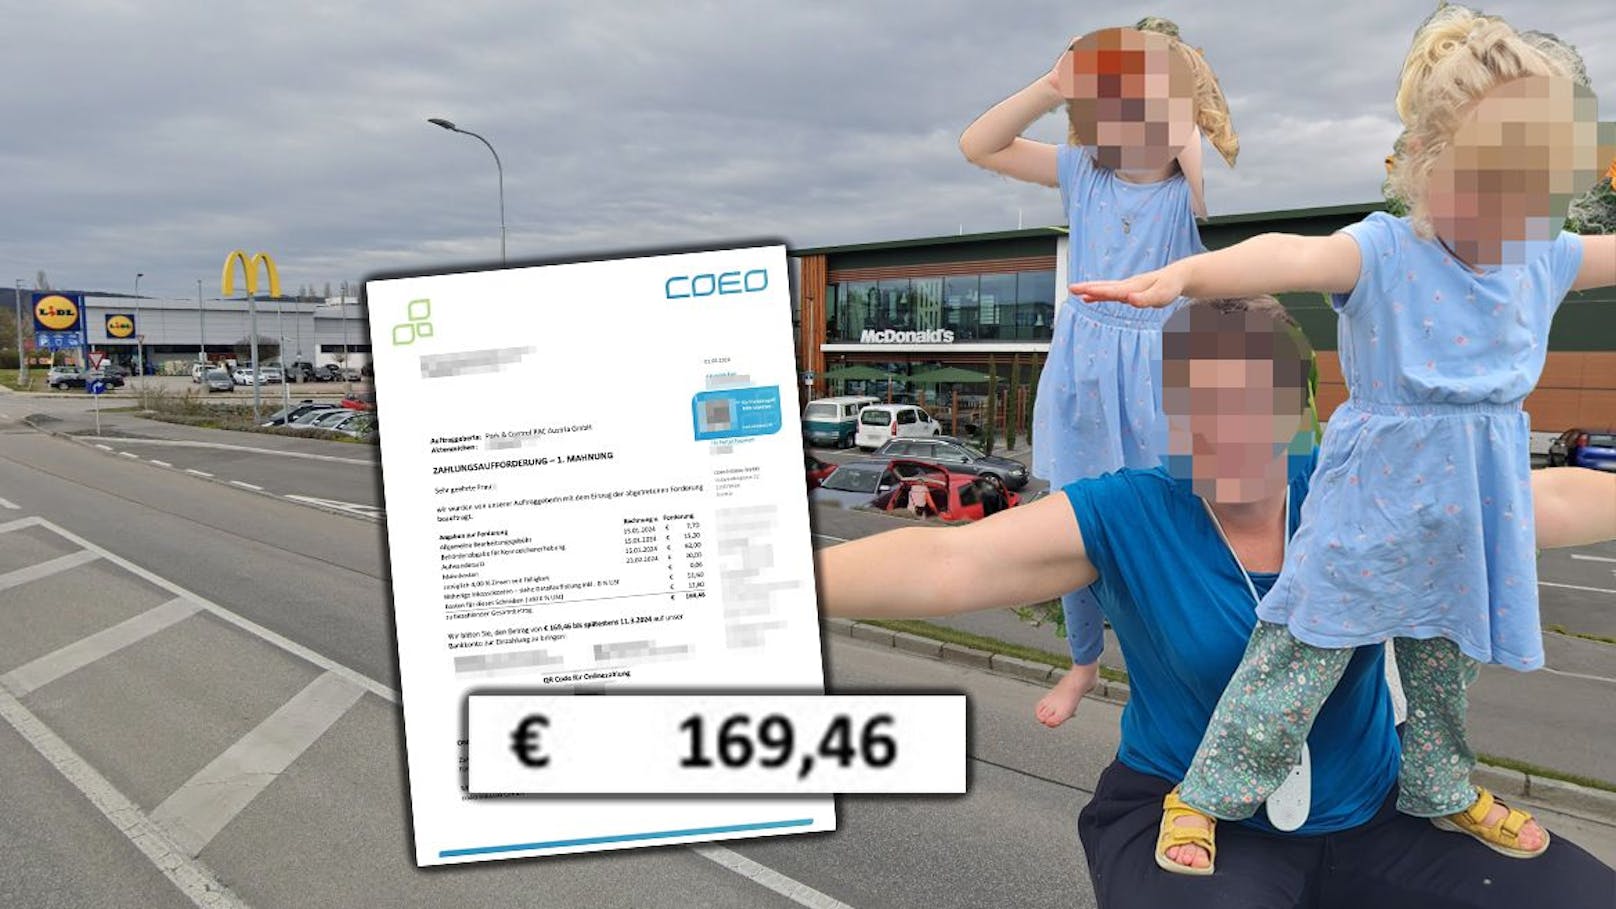 Kids zu lang auf Mäci-Spielplatz, Mama muss 170€ zahlen